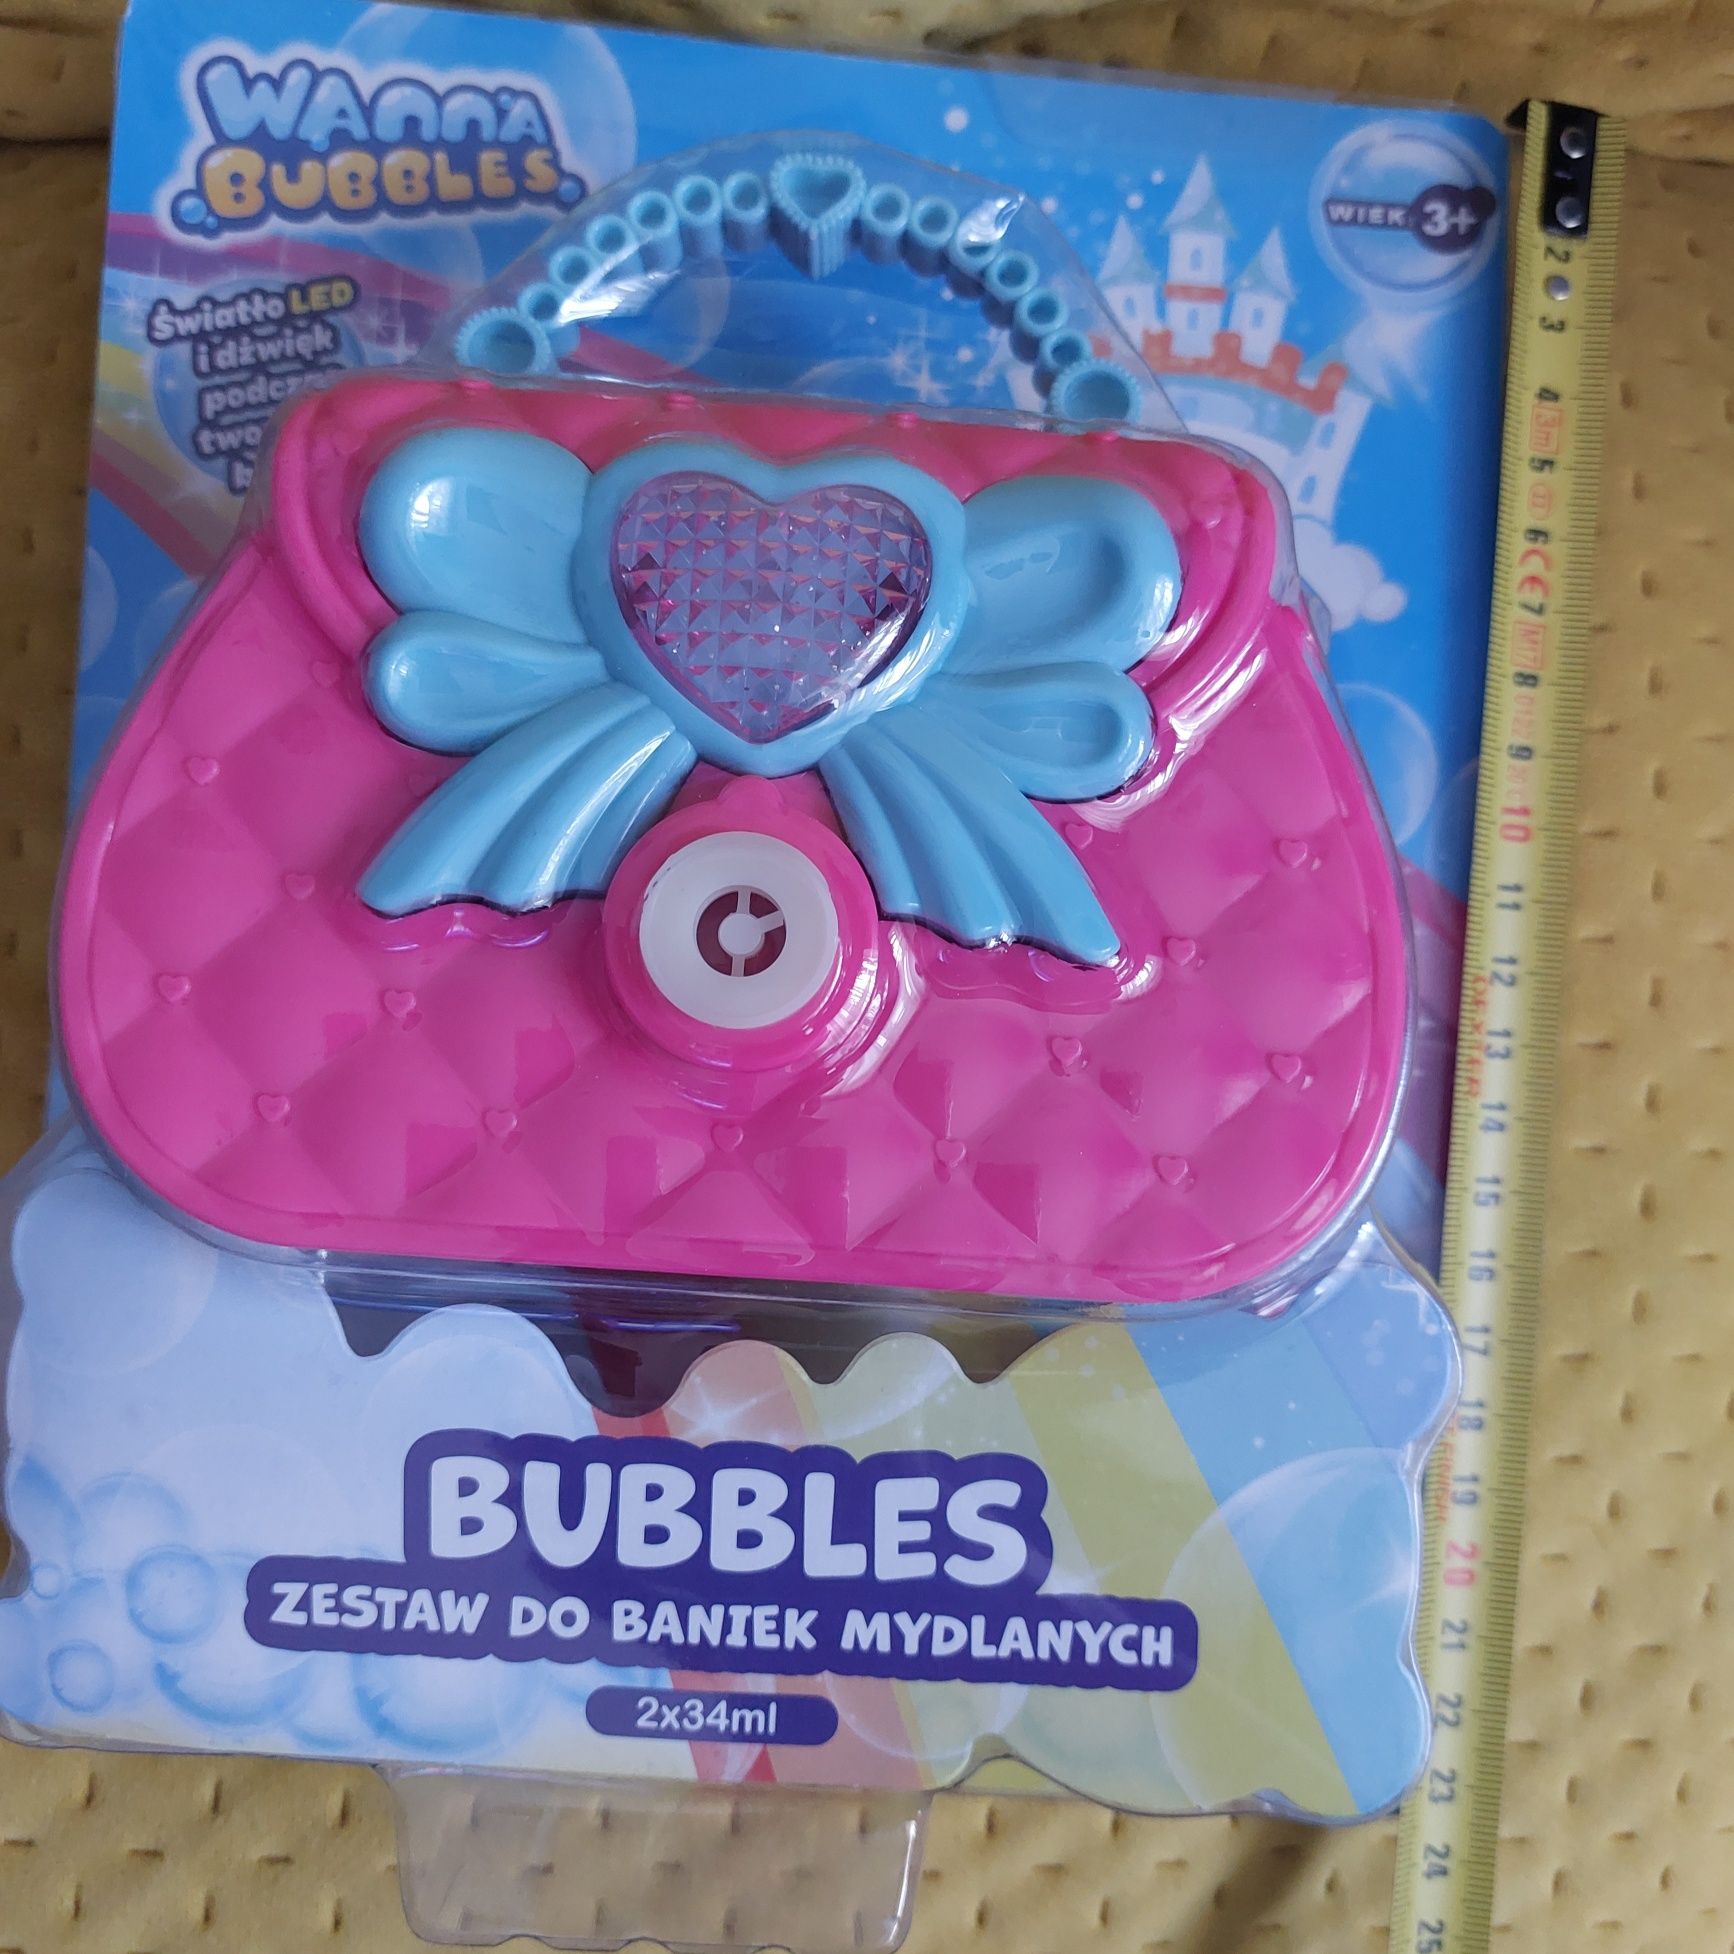 wanna bubbles torebka zestaw do baniek mydlanych nowy wiek 3+